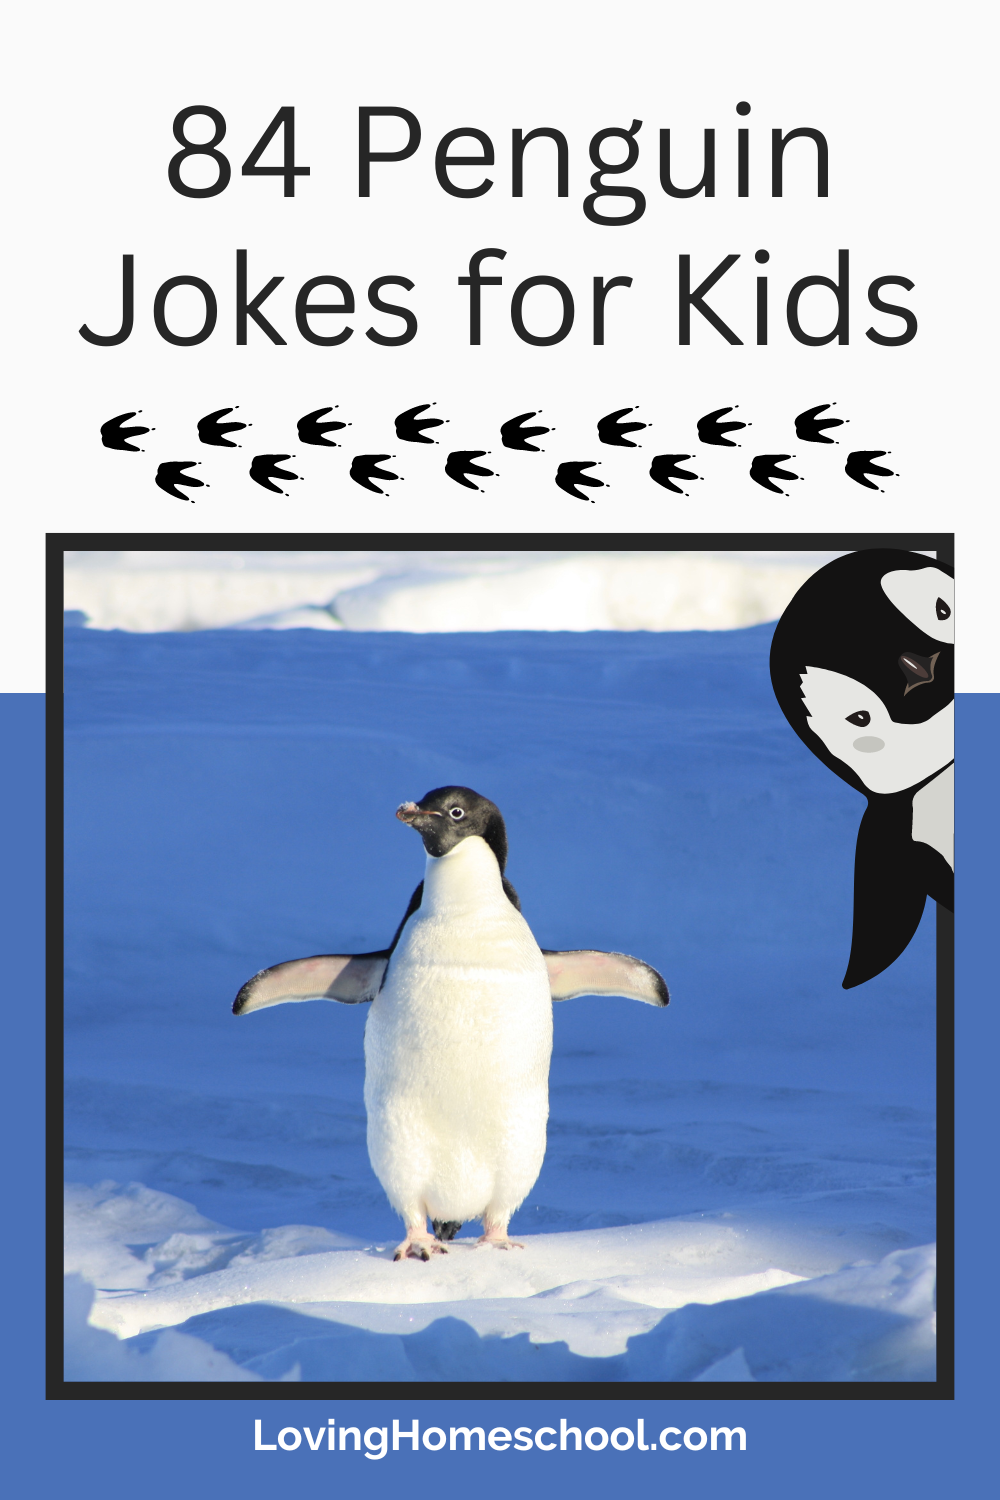 84 Penguin Jokes for Kids Pinterest Pin